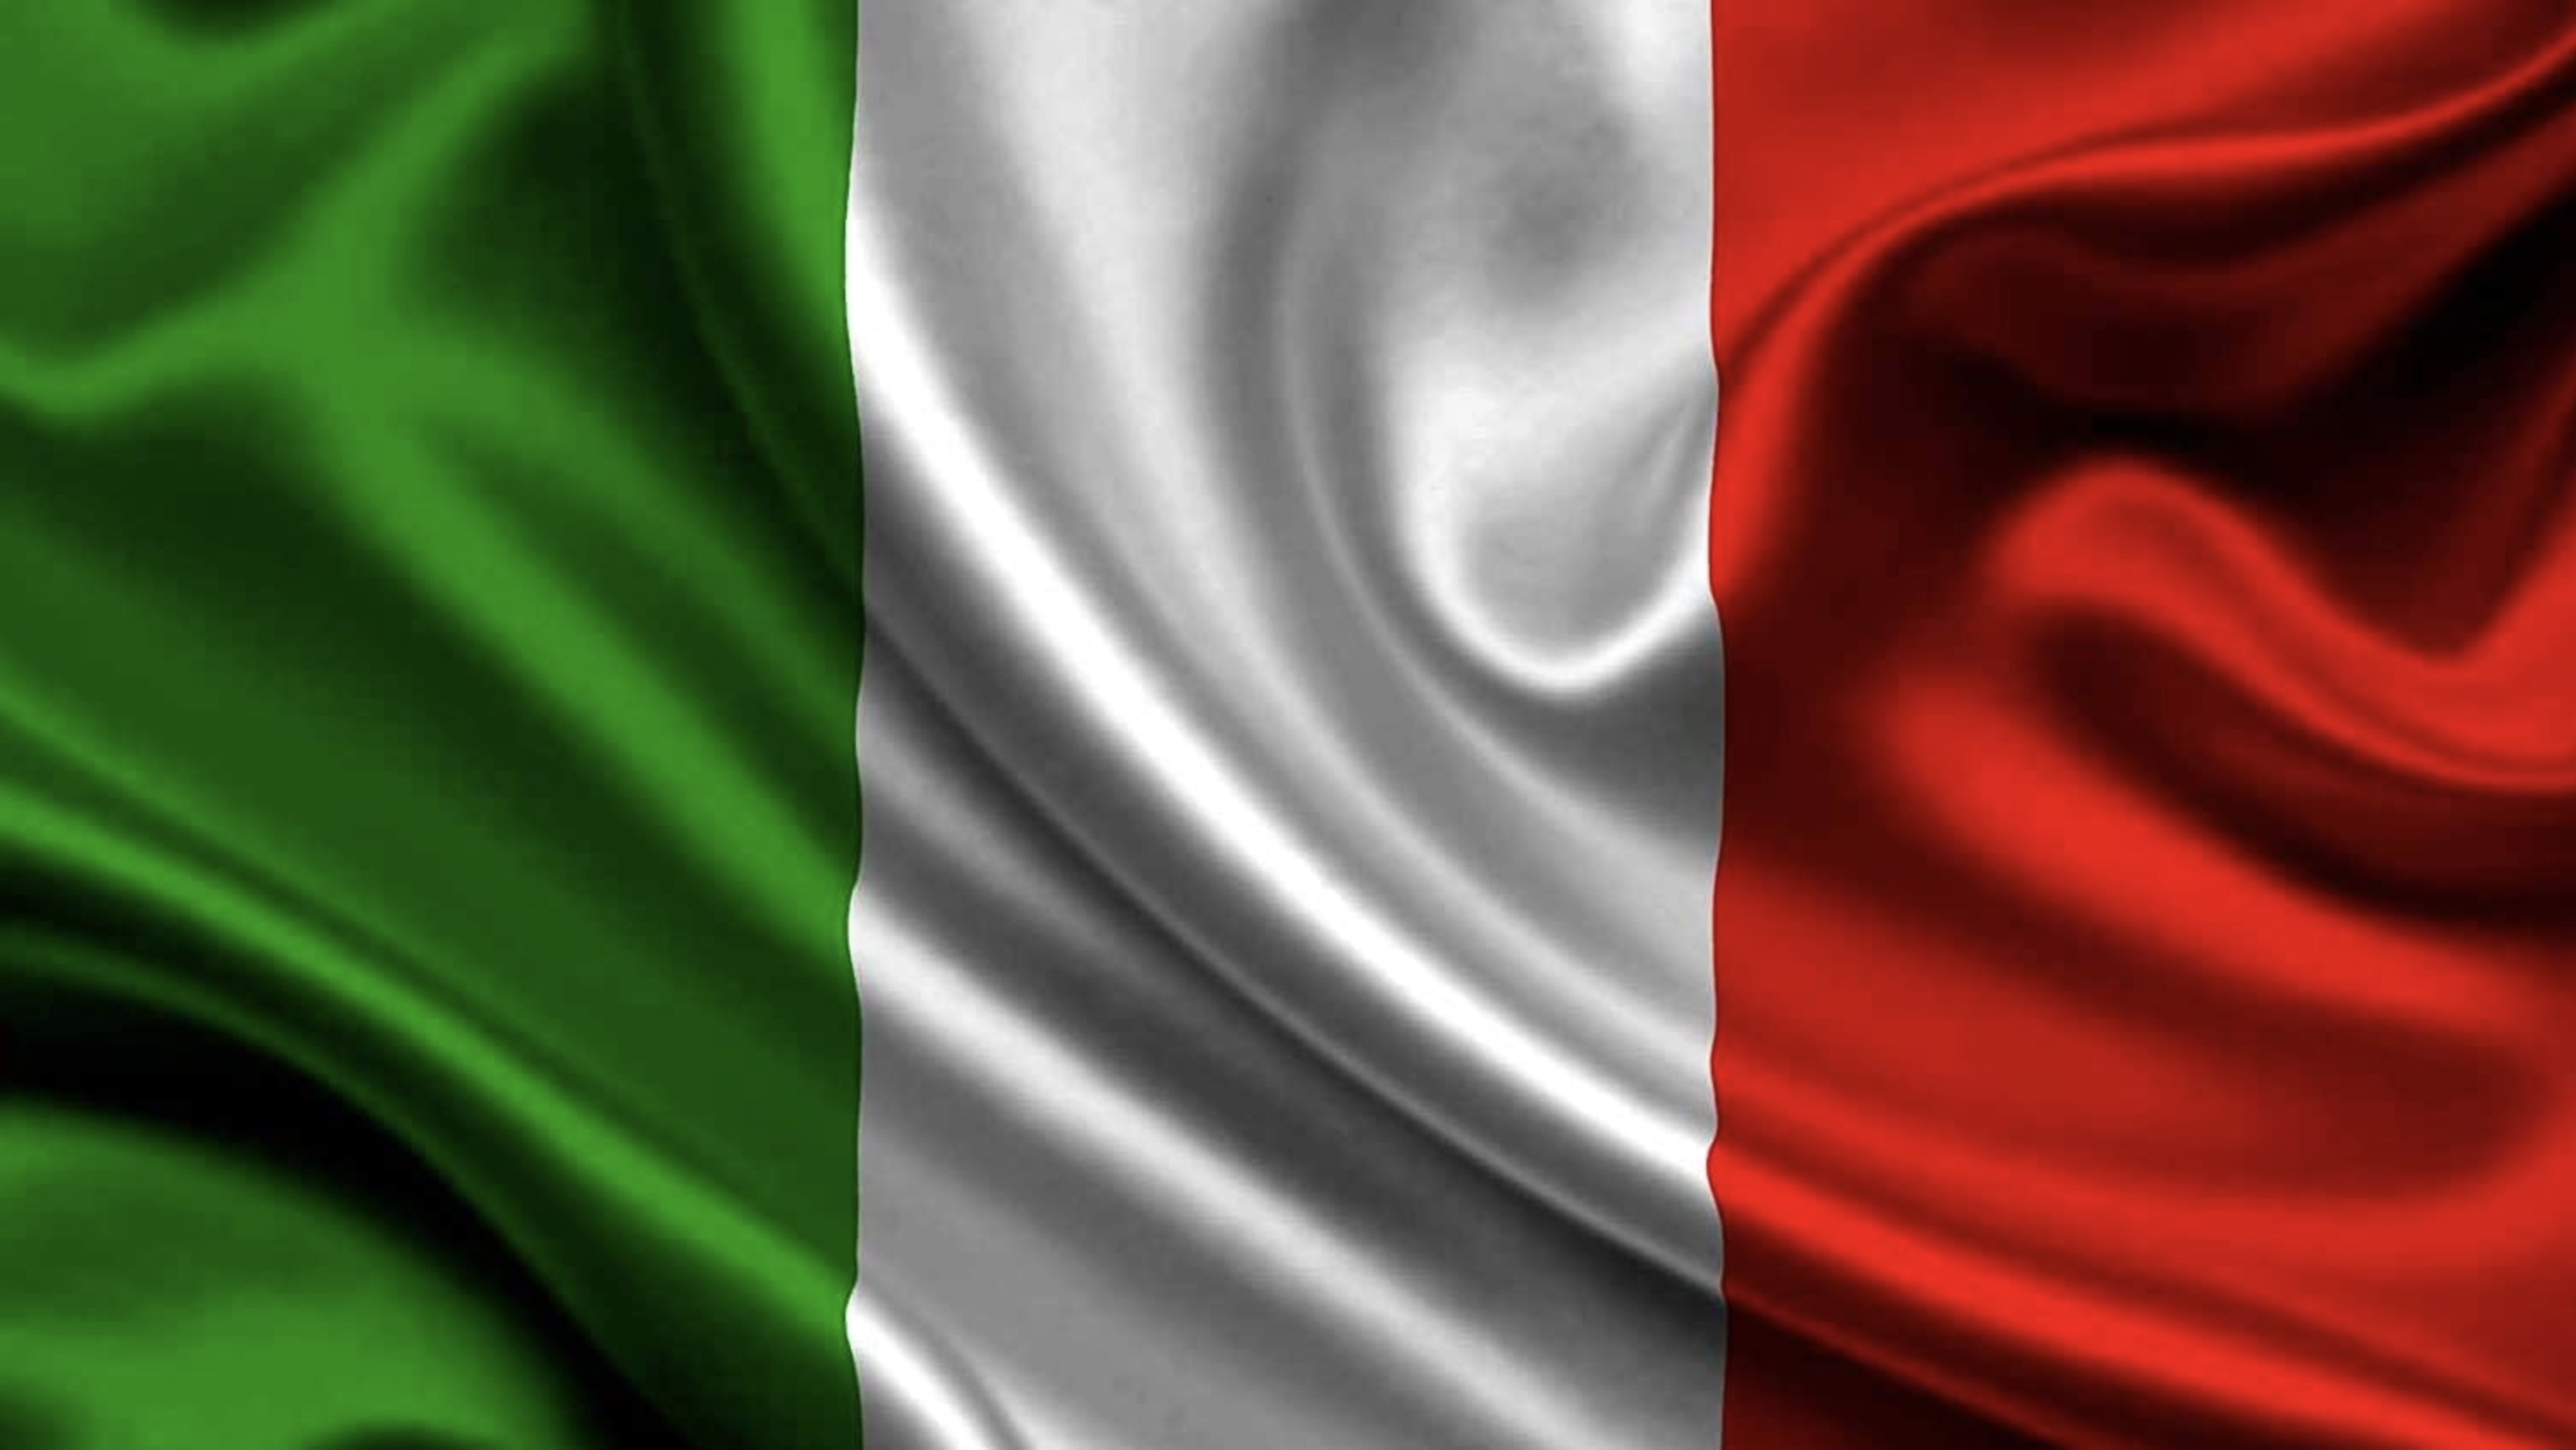 Grafiche MDM e il Made in Italy: letteralmente, lapropria bandiera, con le nostre idee, il nostro team, i nostri consulenti e le soluzioni che proponiamo